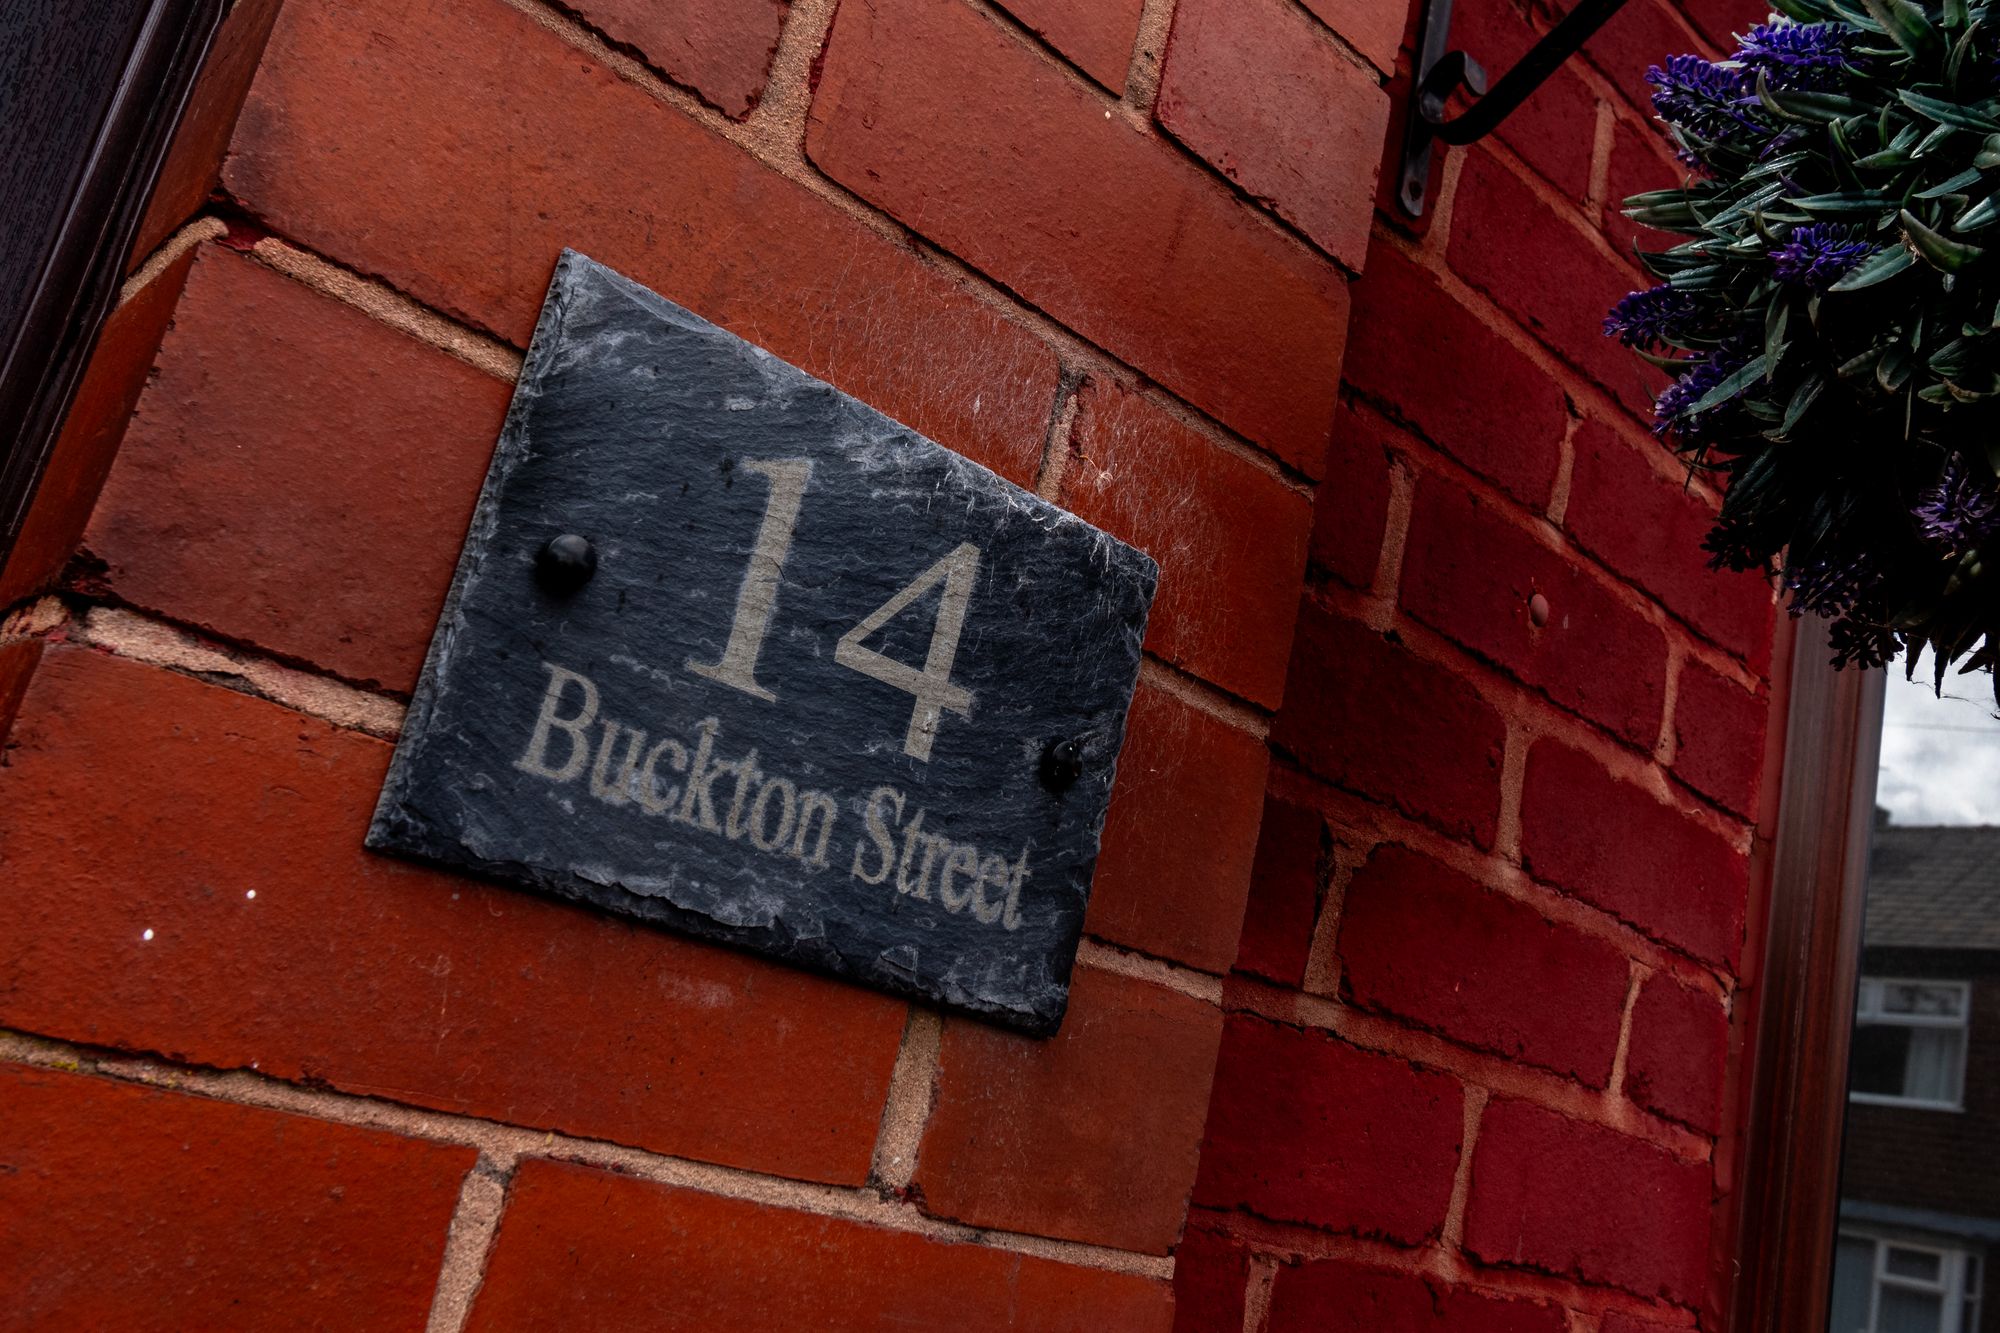 Buckton Street, Warrington